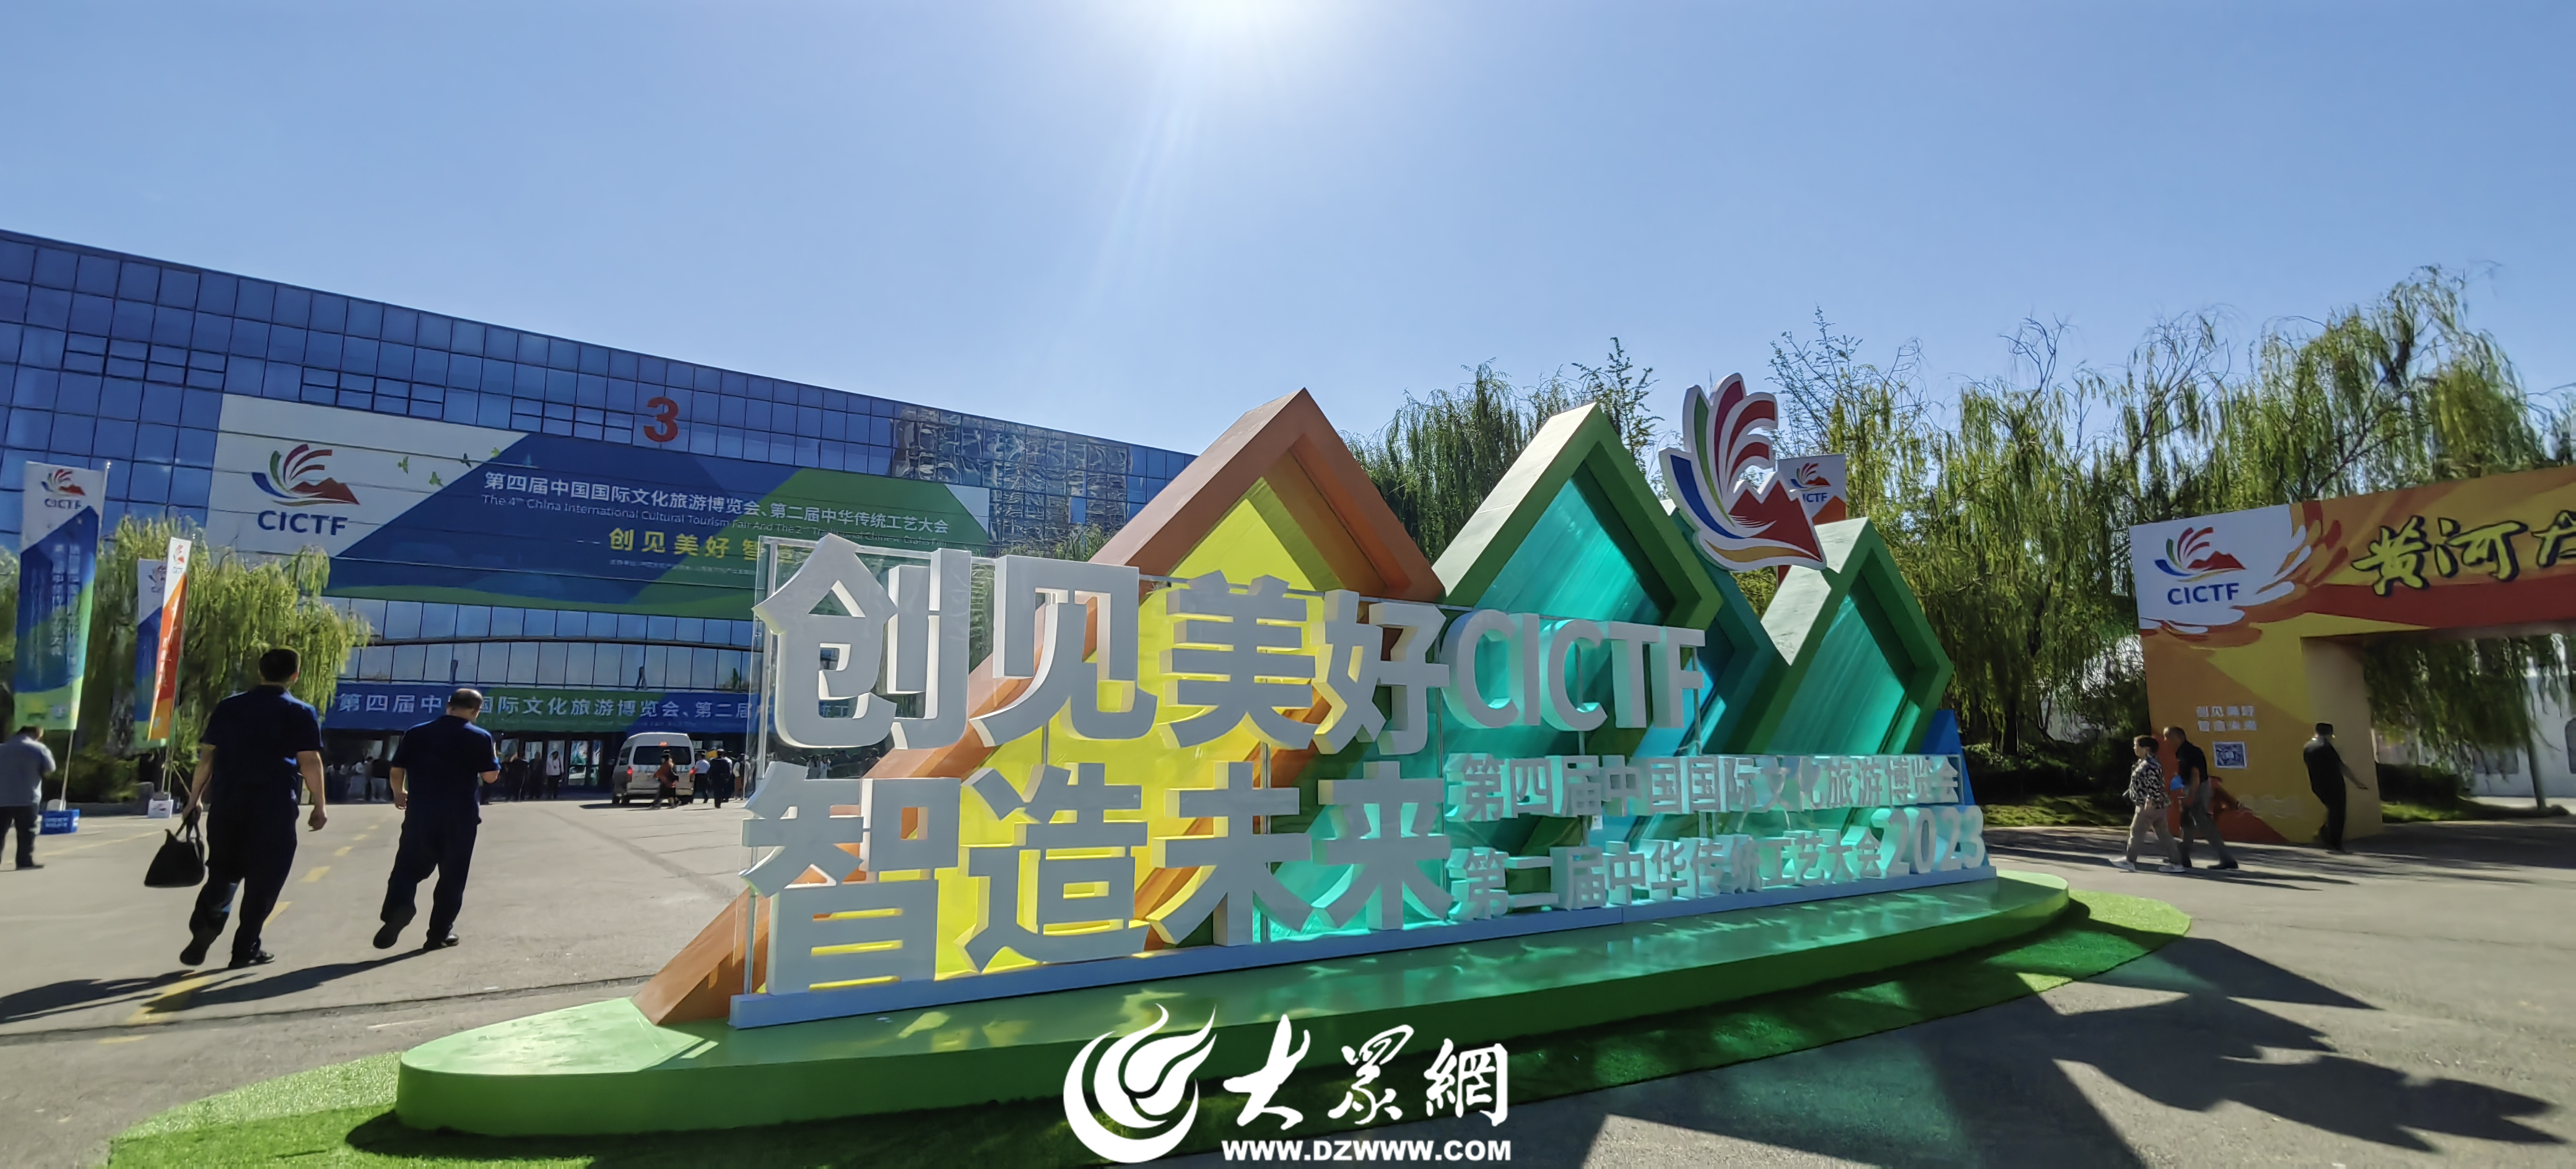 旅游博览会，第二届中华传统工艺大会，今天将开启第四届中国国际文化，让众多智慧点亮文化之光